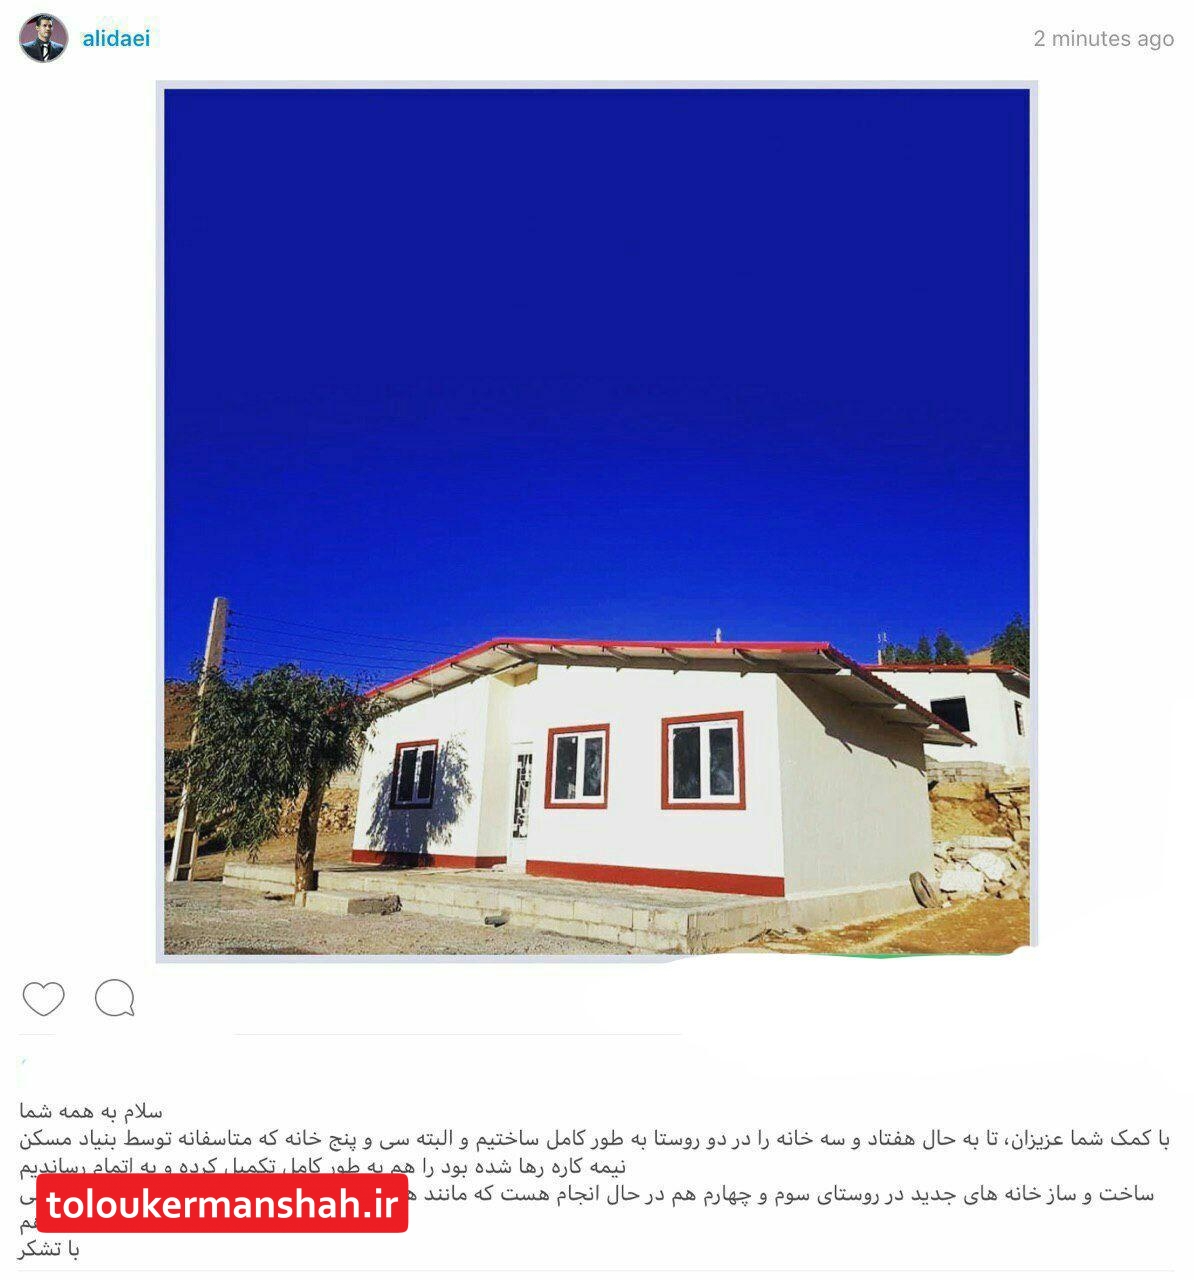 ۳۵ خانه نیمه کاره در مناطق زلزله زده کرمانشاه که توسط بنیاد مسکن رها شده بود به همت علی دایی تکمیل شد